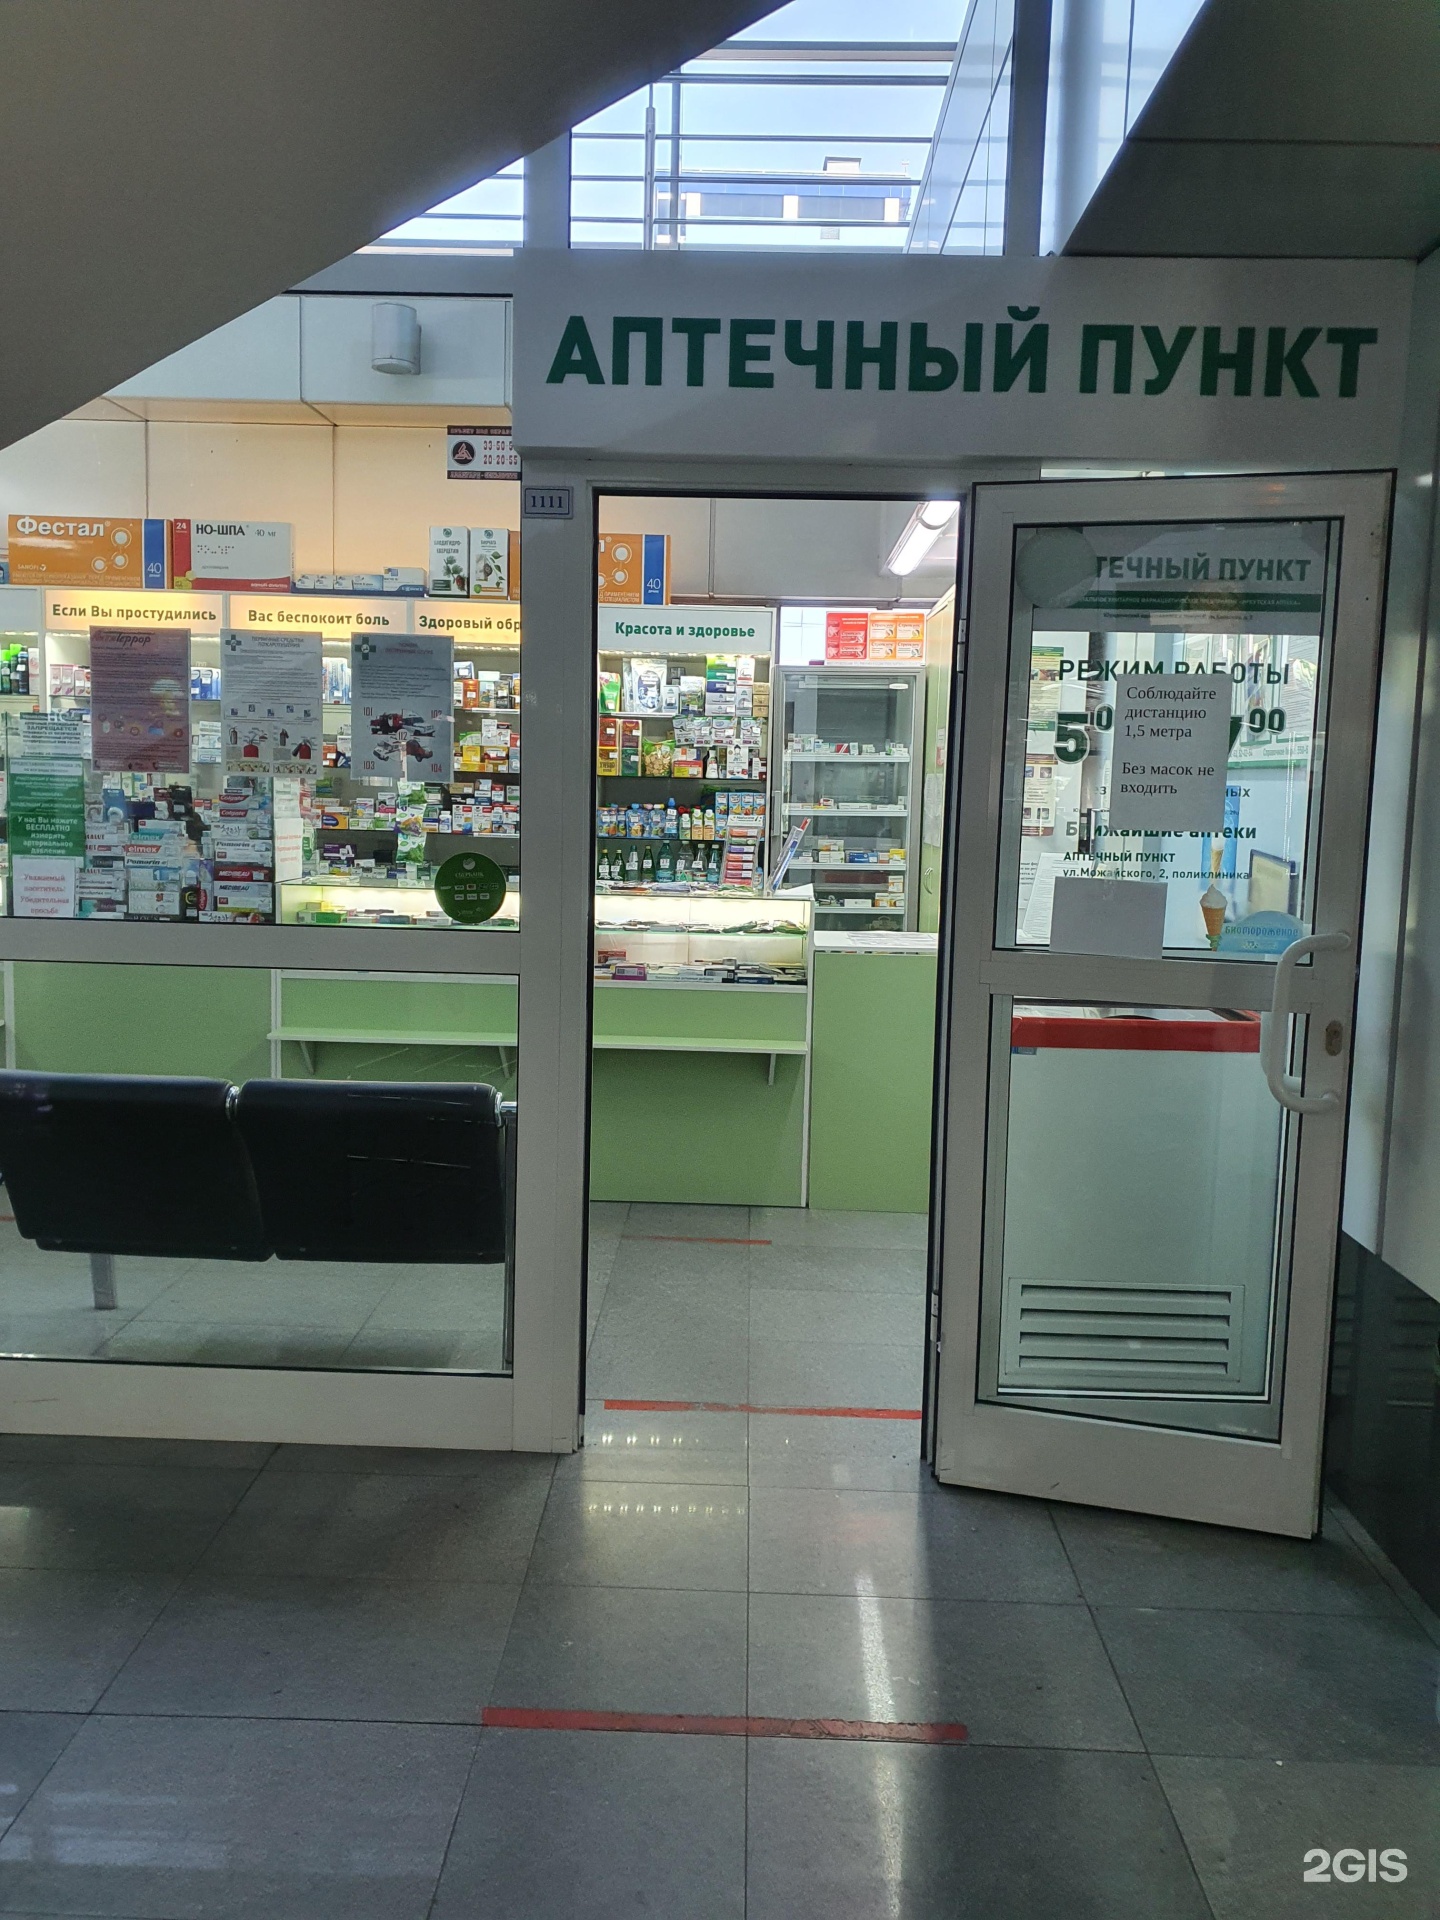 Асна иркутск. Иркутская аптека. Справочная аптек в Иркутске. Муниципальная аптека Иркутск. Аптека в аэропорту.